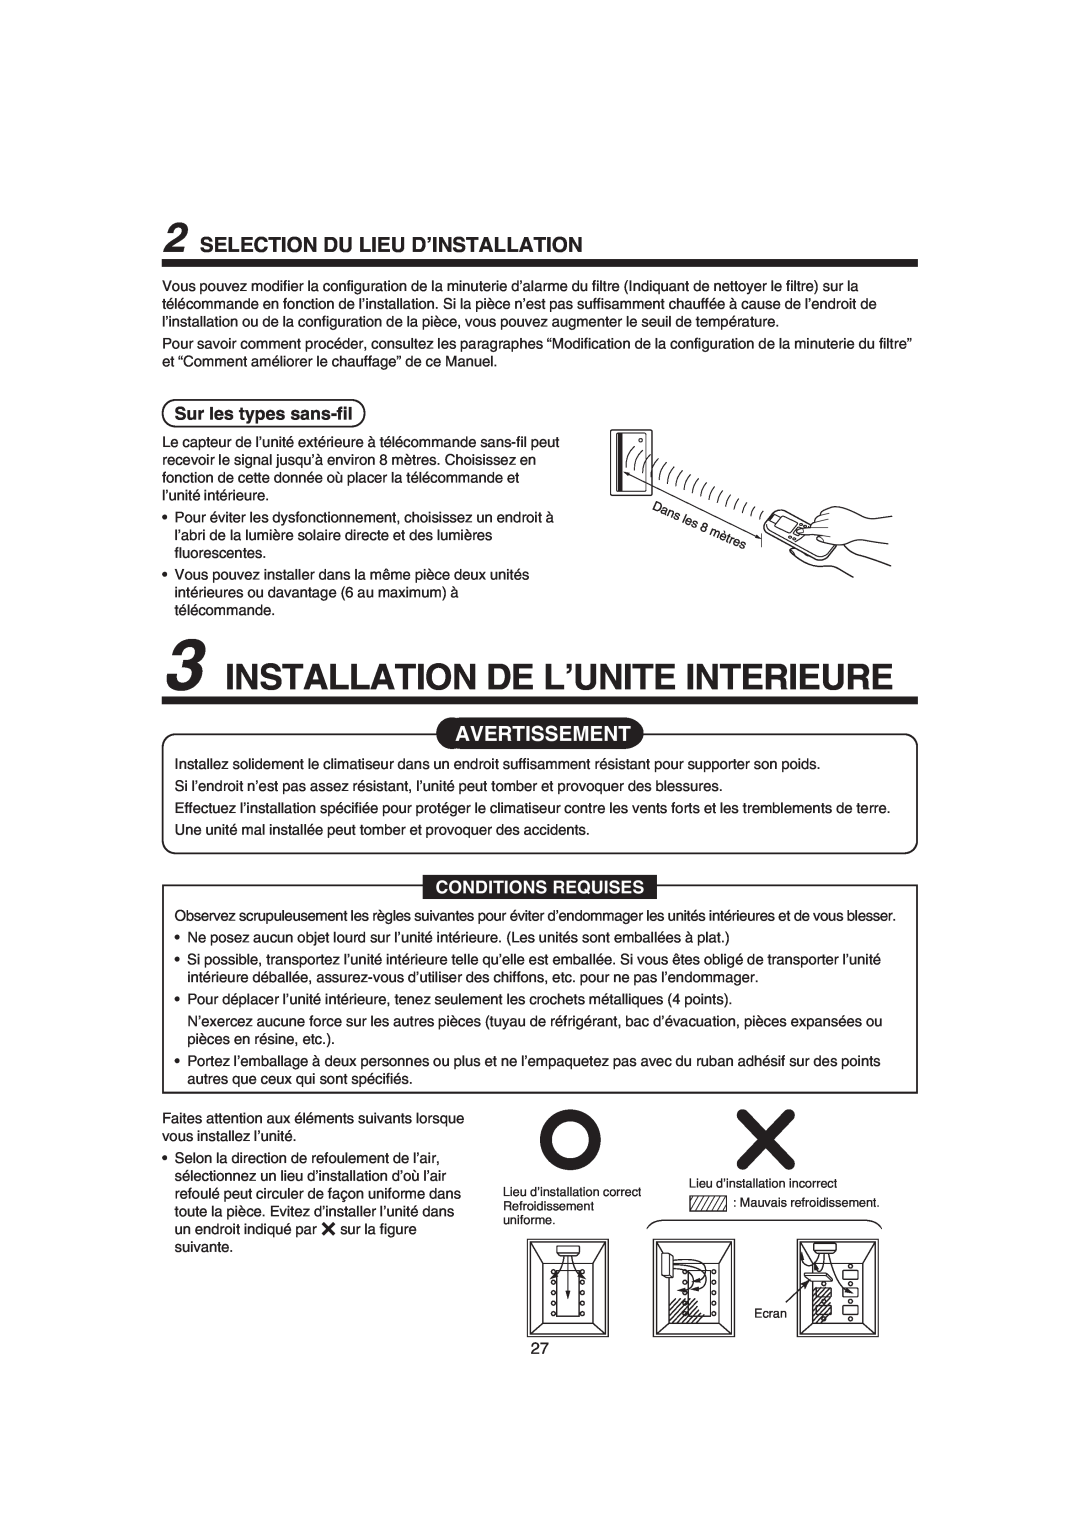 Pentax MMK-AP0121H Installation De L’Unite Interieure, Selection Du Lieu D’Installation, Sur les types sans-fil 